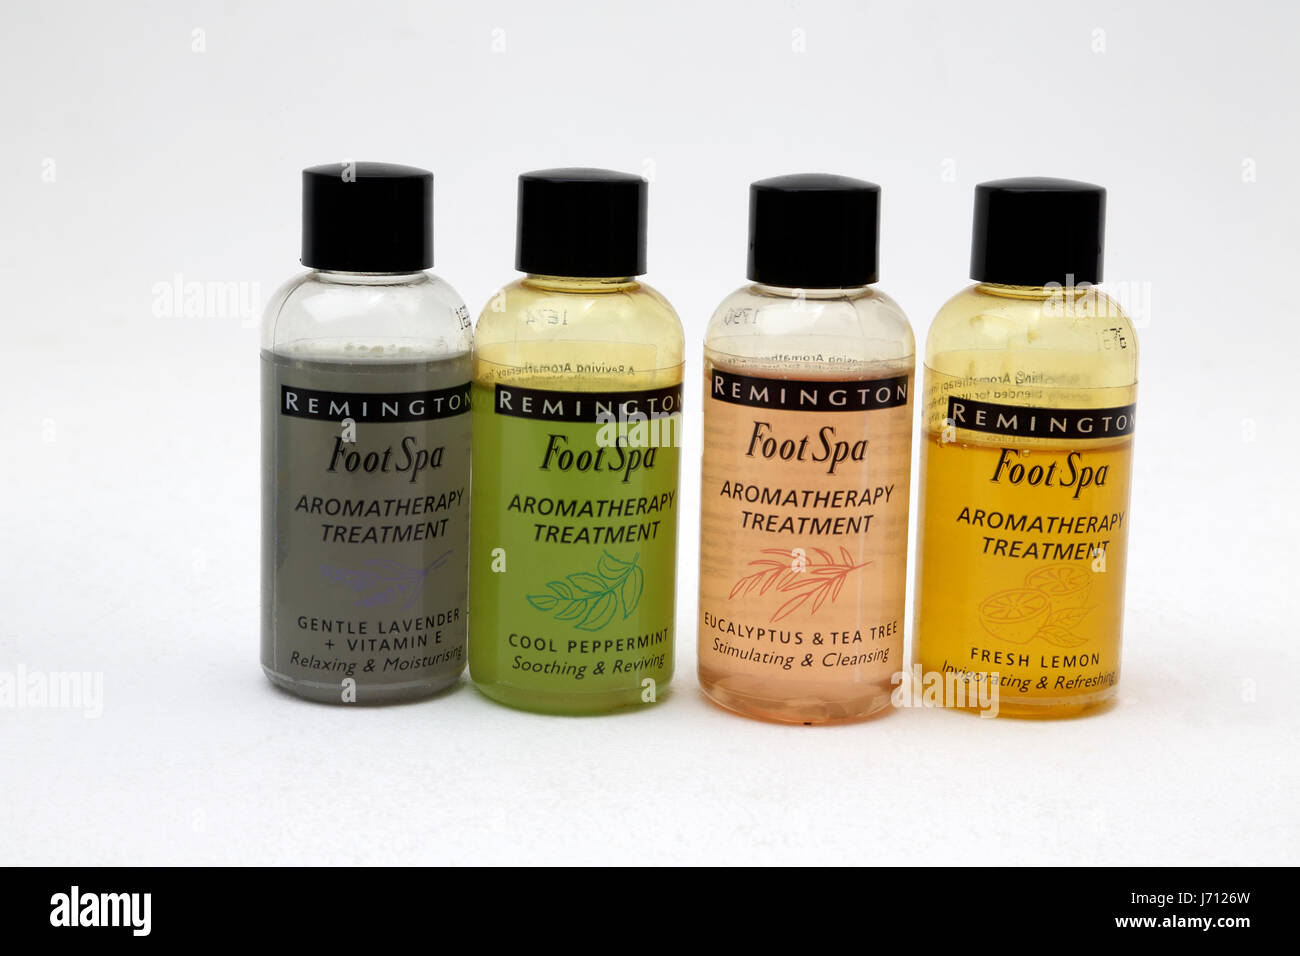 Remington piede Spa aromaterapia oli di trattamento - lavanda, menta, eucalipto e Tea Tree e freschi aromi di limone Foto Stock